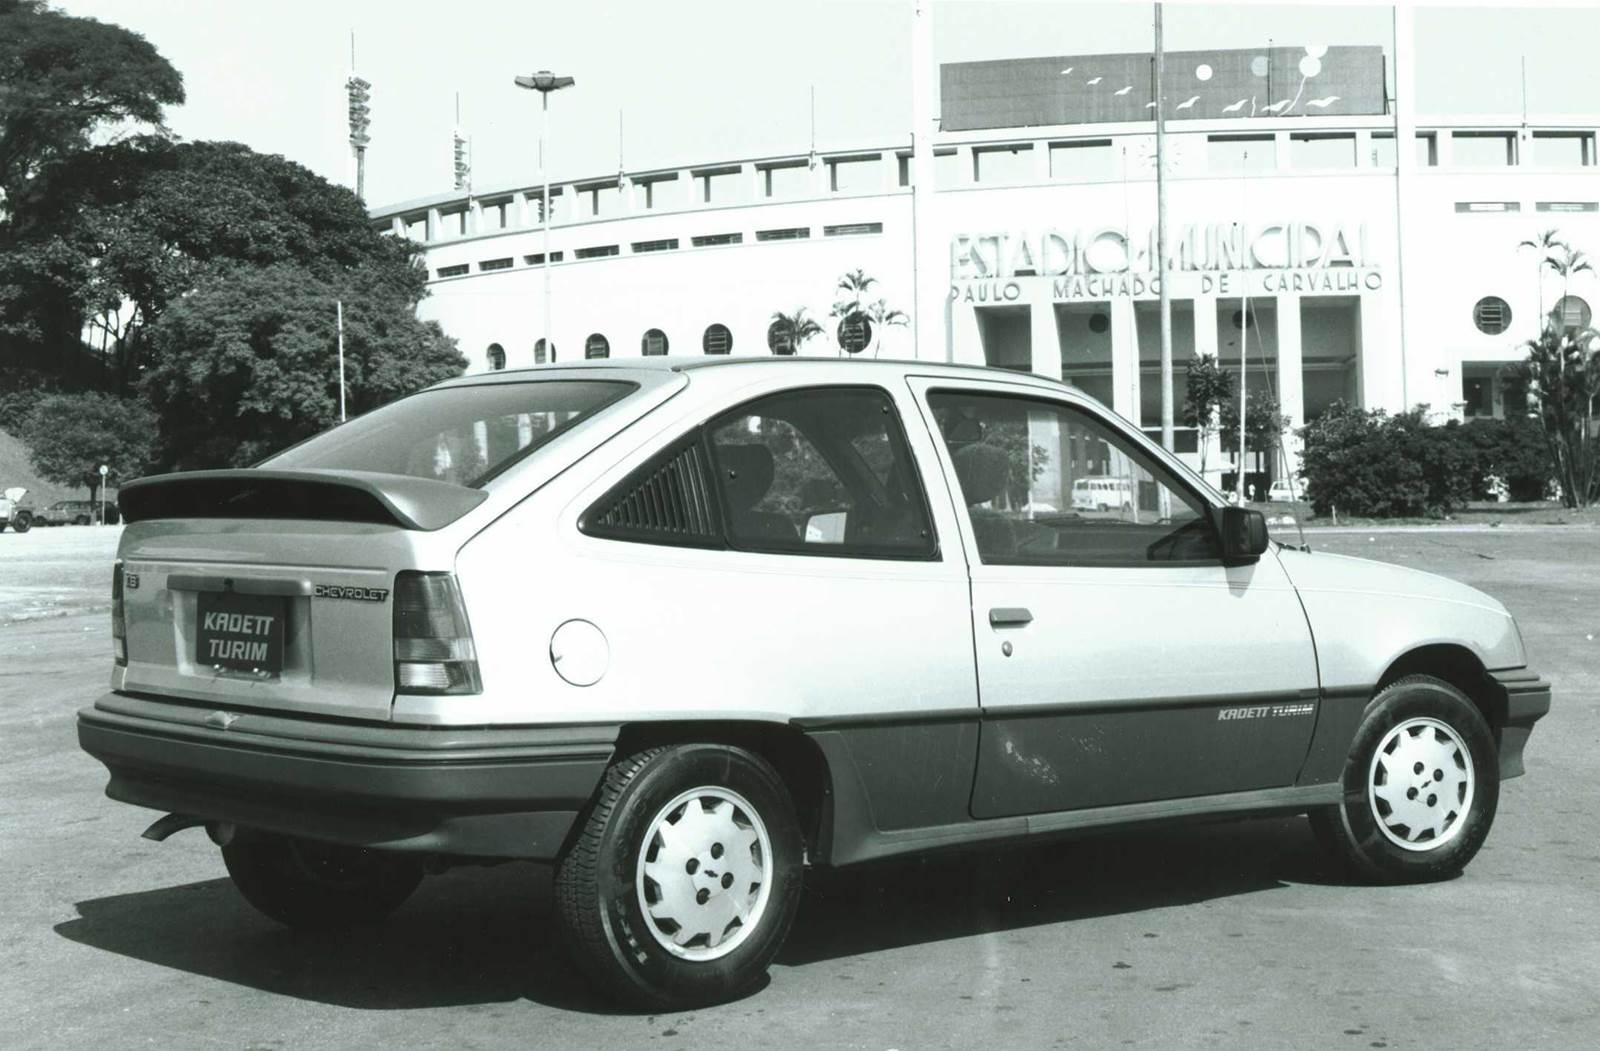 Chevrolet Kadett Turin